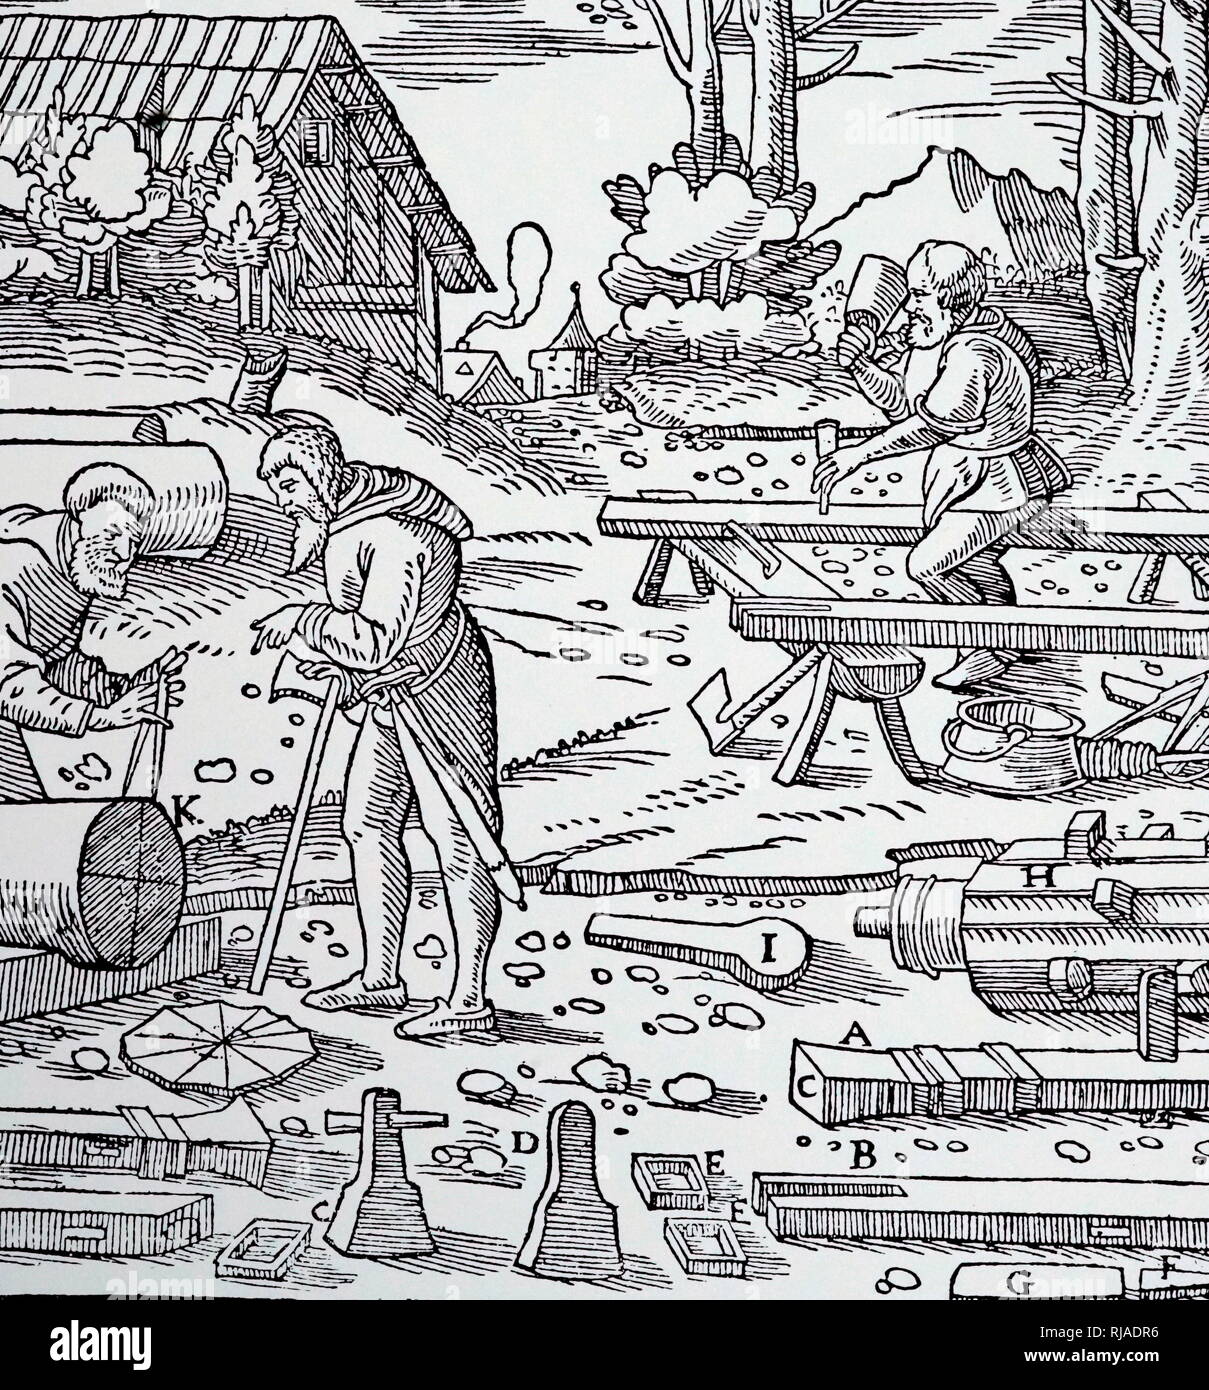 Une gravure sur bois représentant un carpenter faisant une usine d'estampage, un timbre, B, H, souches, l'arbre à came, J', cam. En date du 16e siècle Banque D'Images